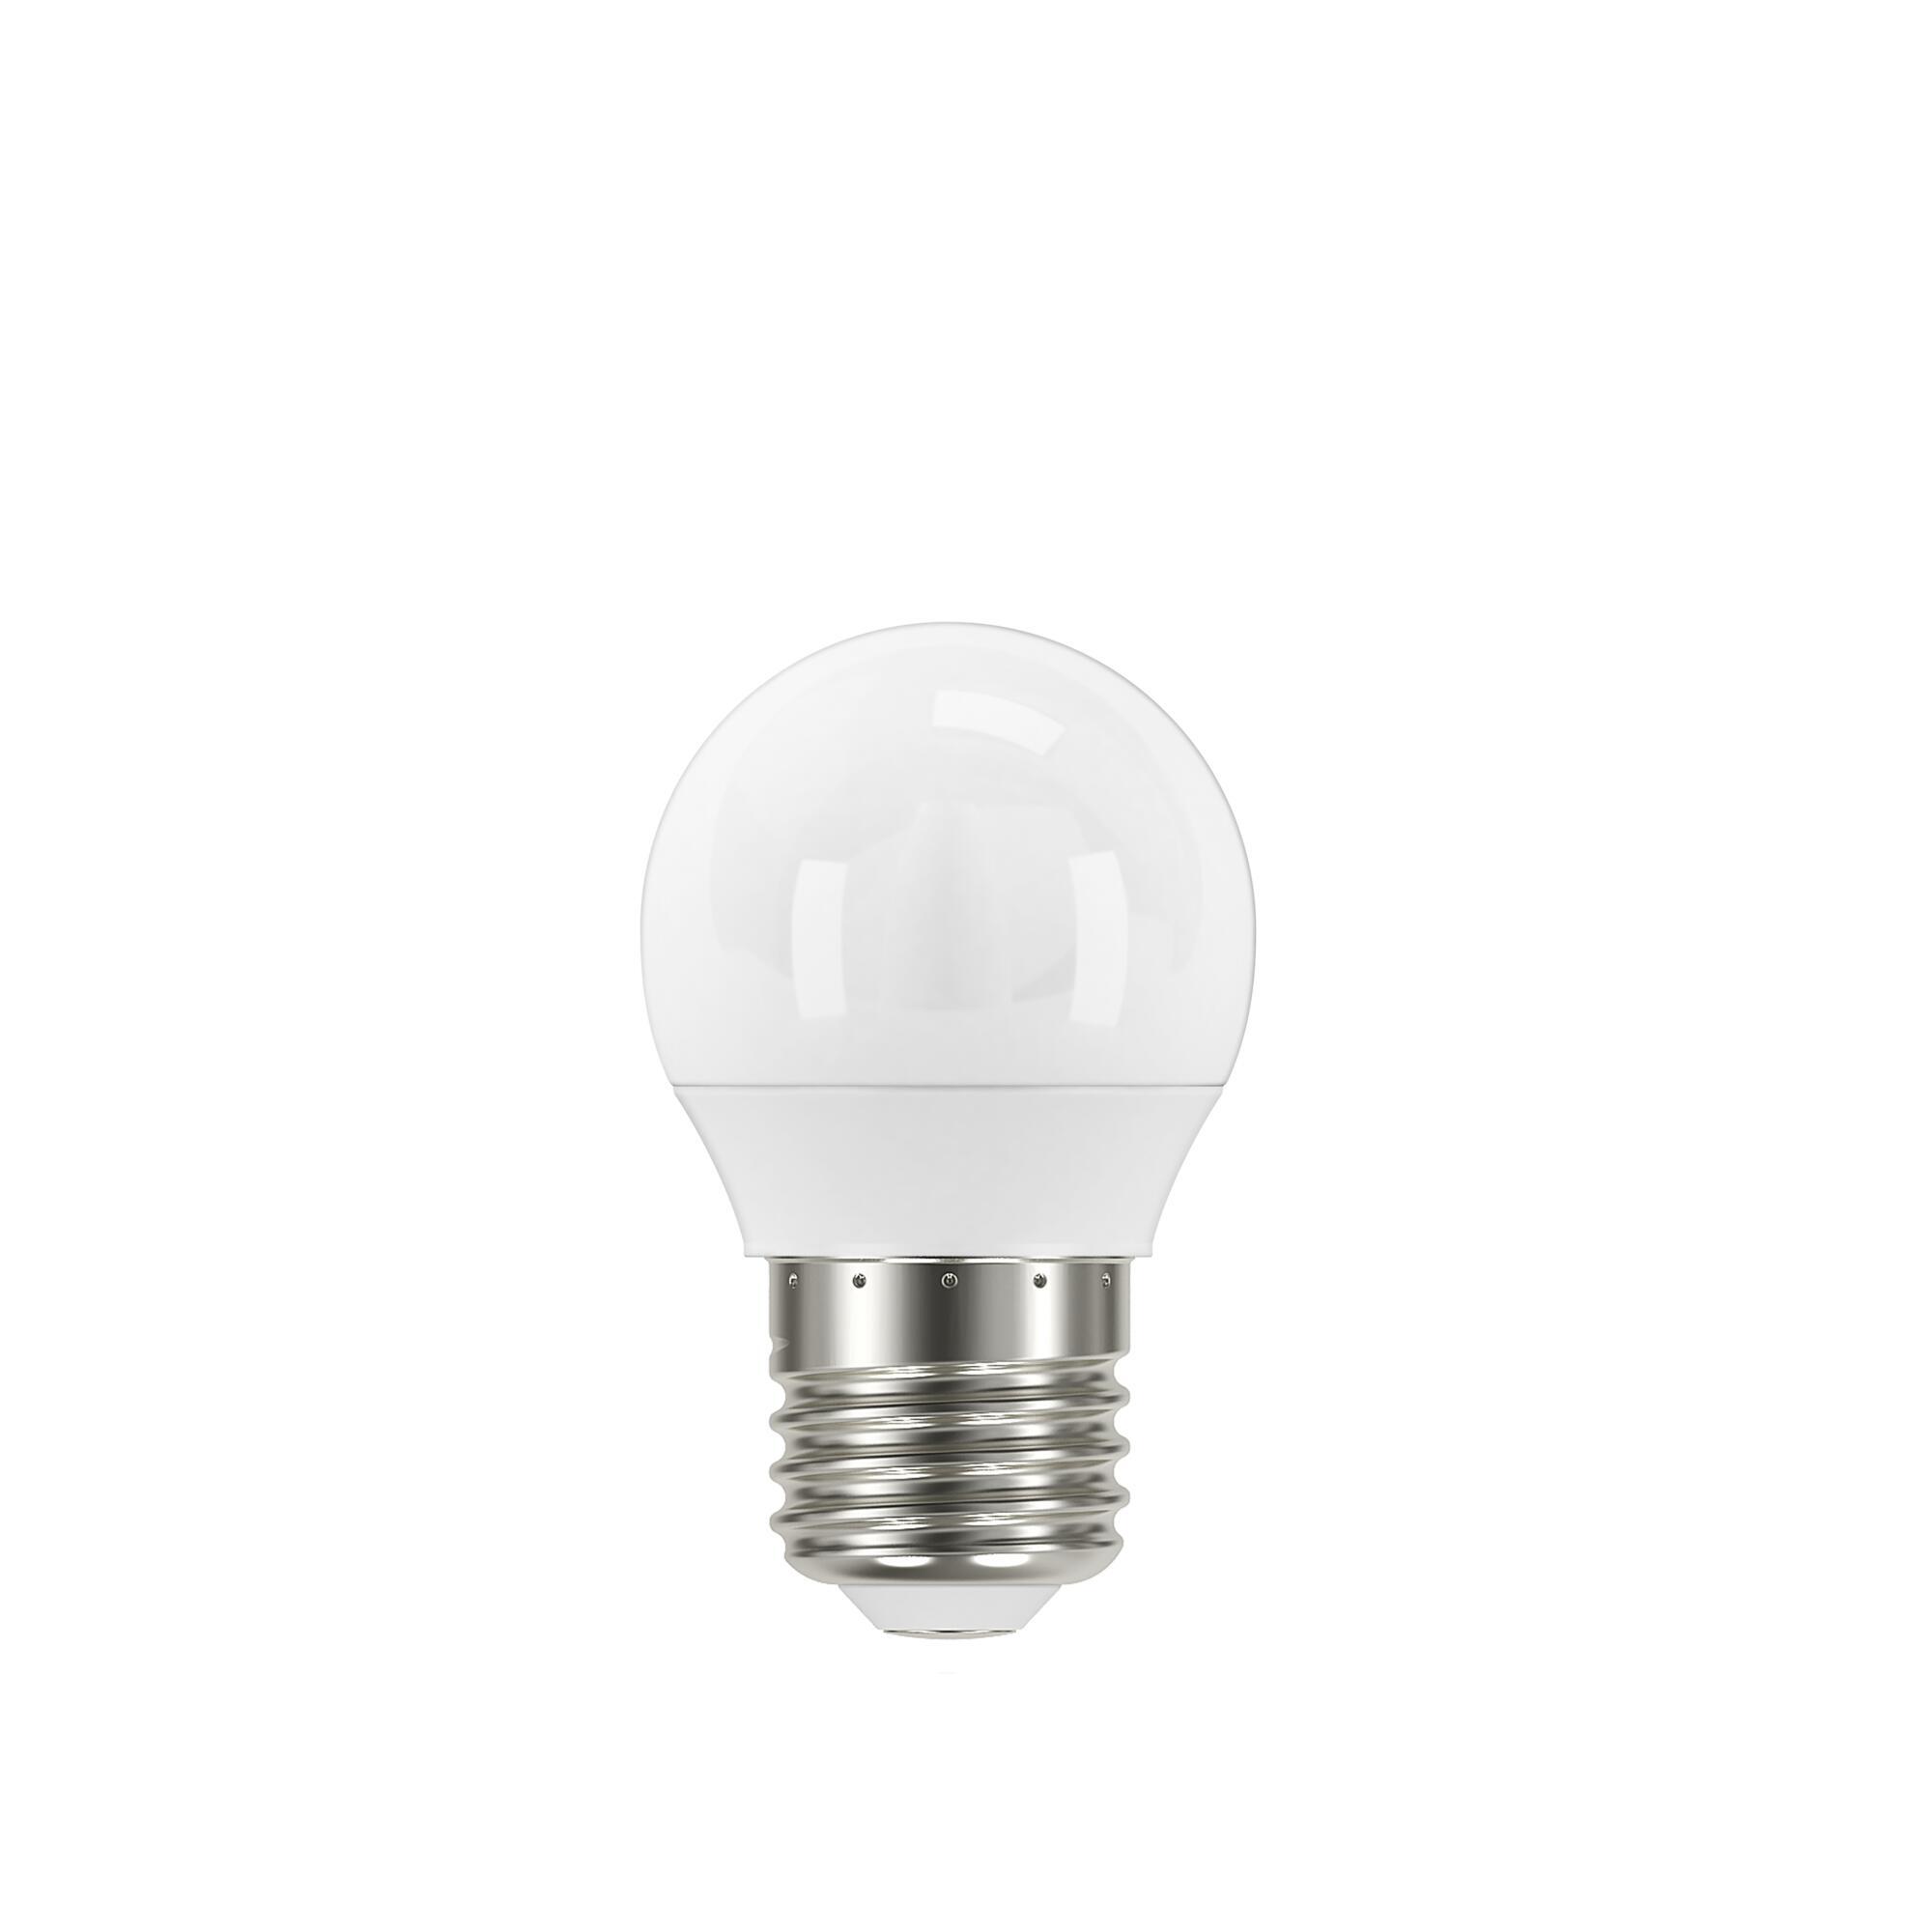 Ampoule led, sphérique E14, 250lm = 25W, blanc neutre, LEXMAN, Leroy  Merlin